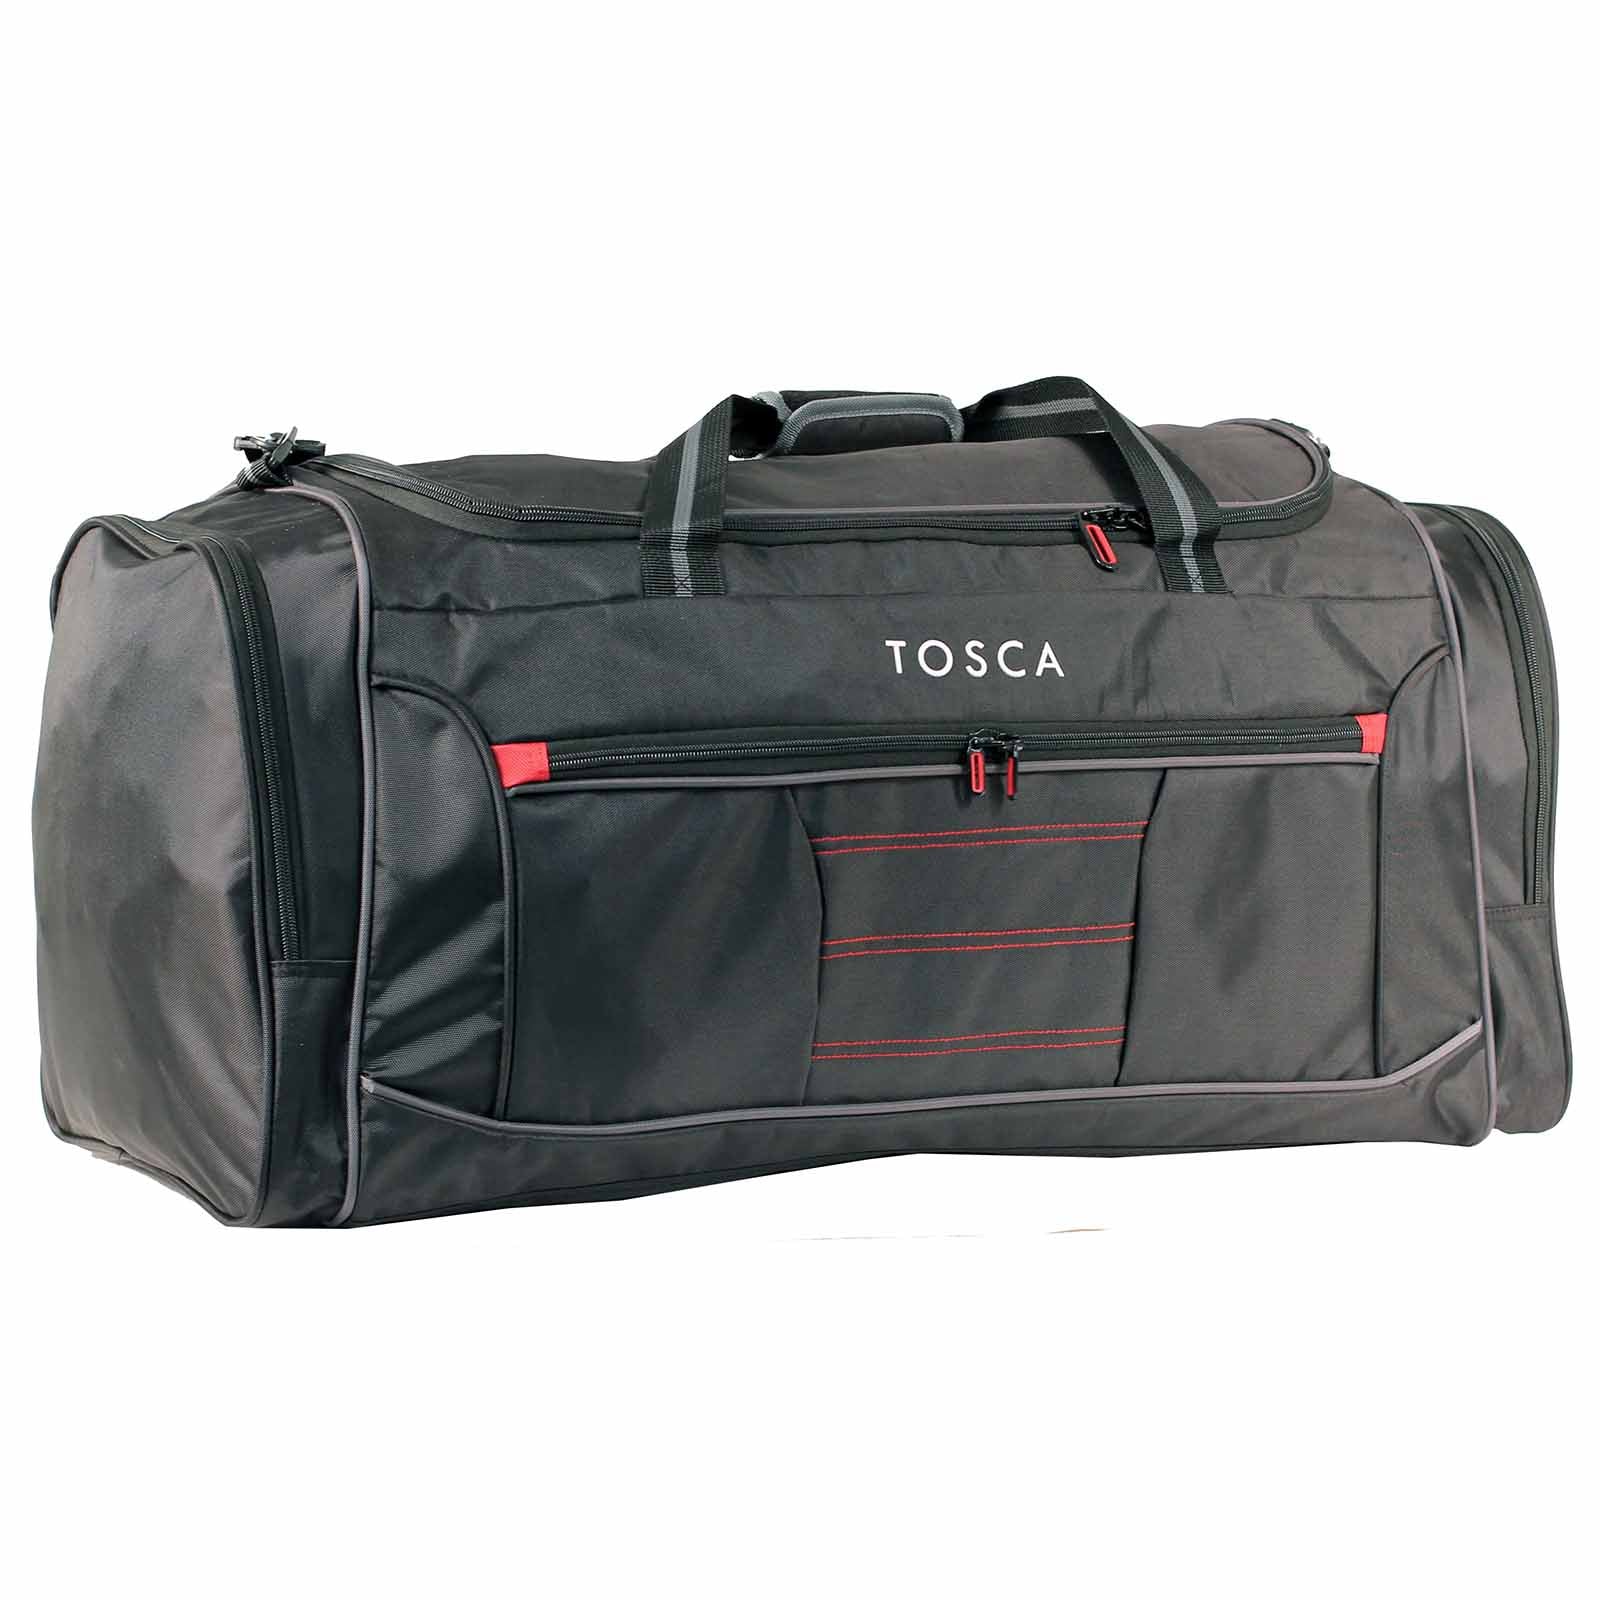 Tosca Medium Duffel Bag Black